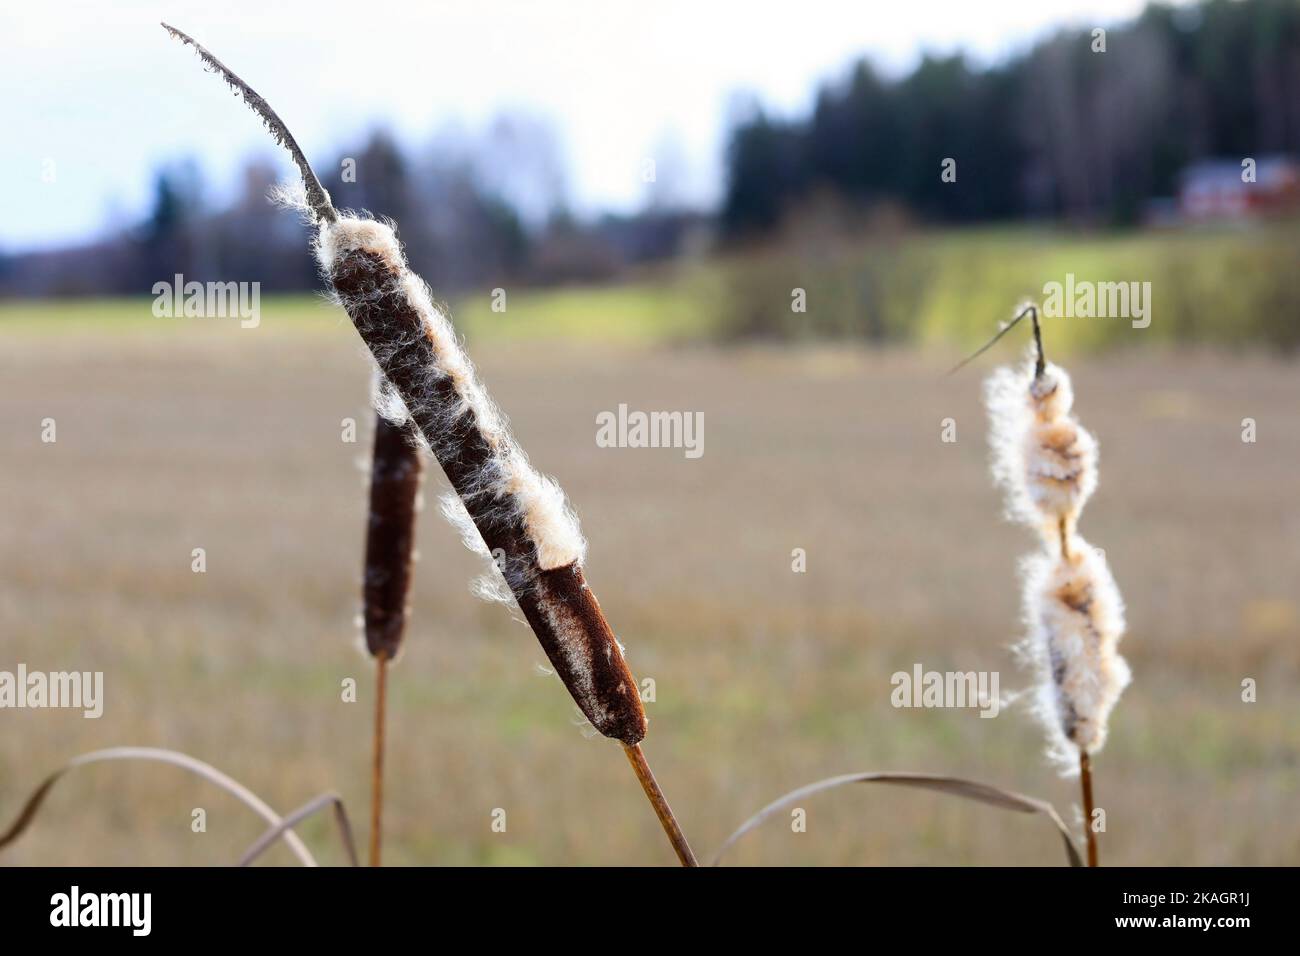 Des têtes de semis mûres de Typha latifolia, également appelées Bulrush ou Common Cattail, en hiver. Les peluches de coton se dispersent par le vent. Banque D'Images